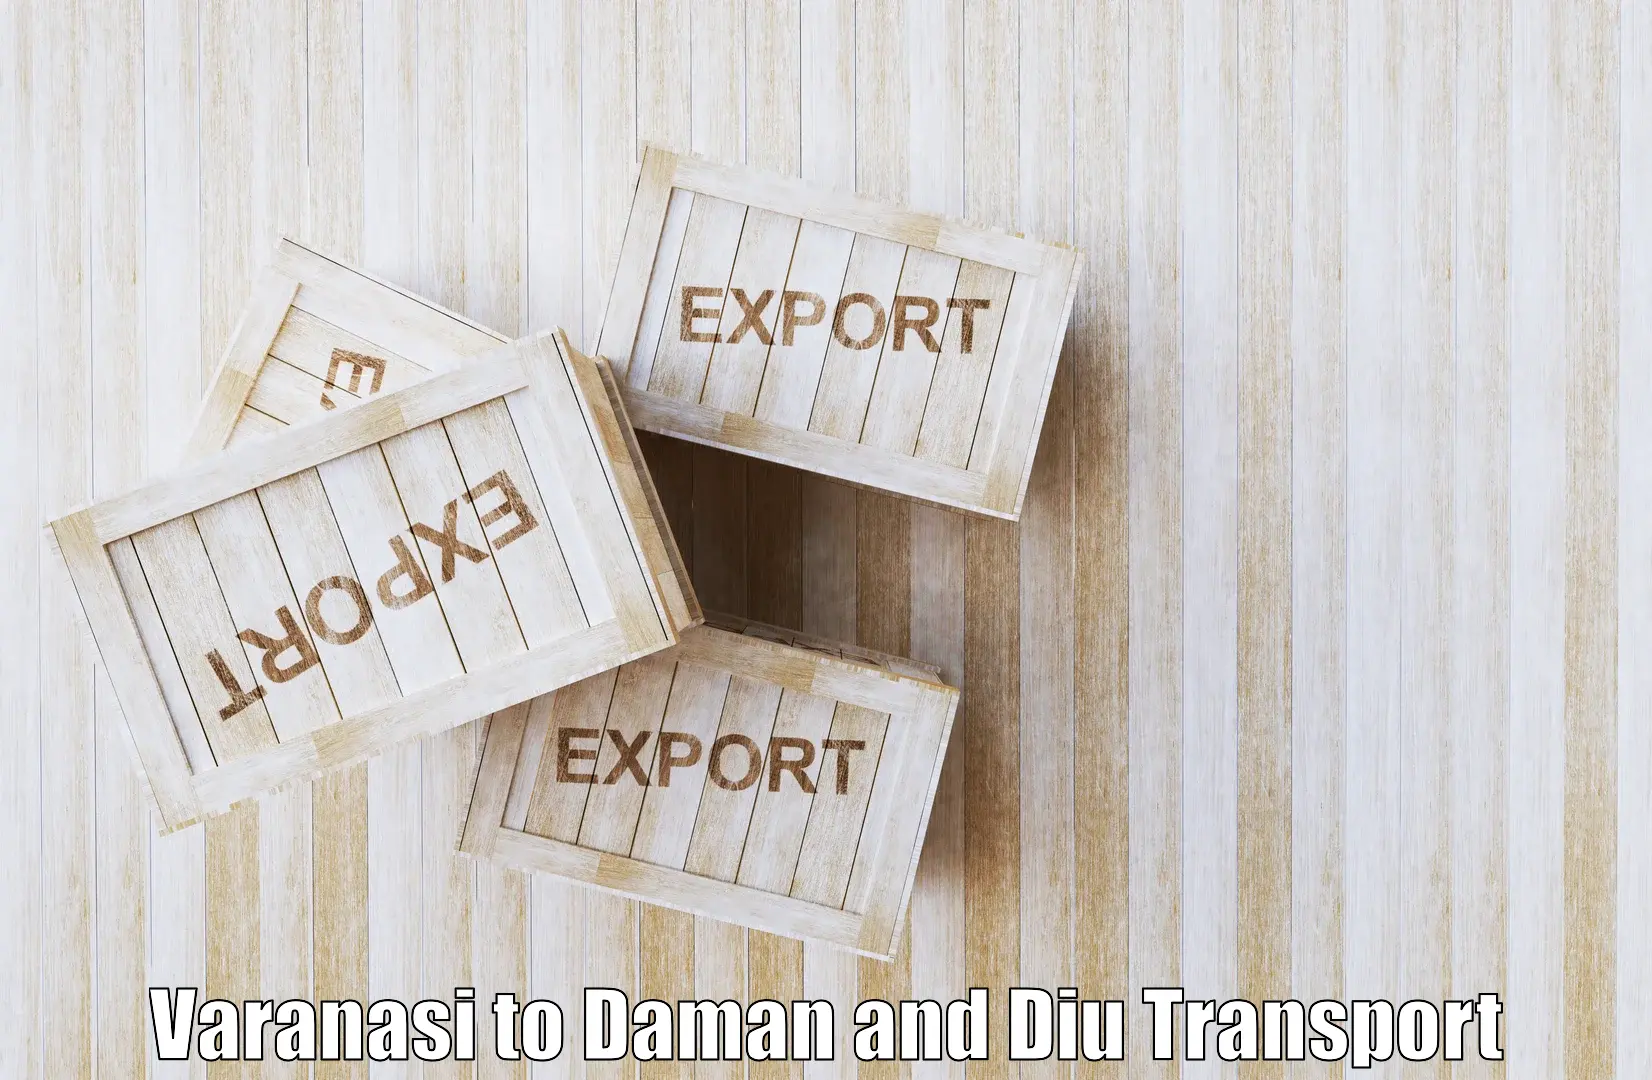 Nearest transport service Varanasi to Daman and Diu